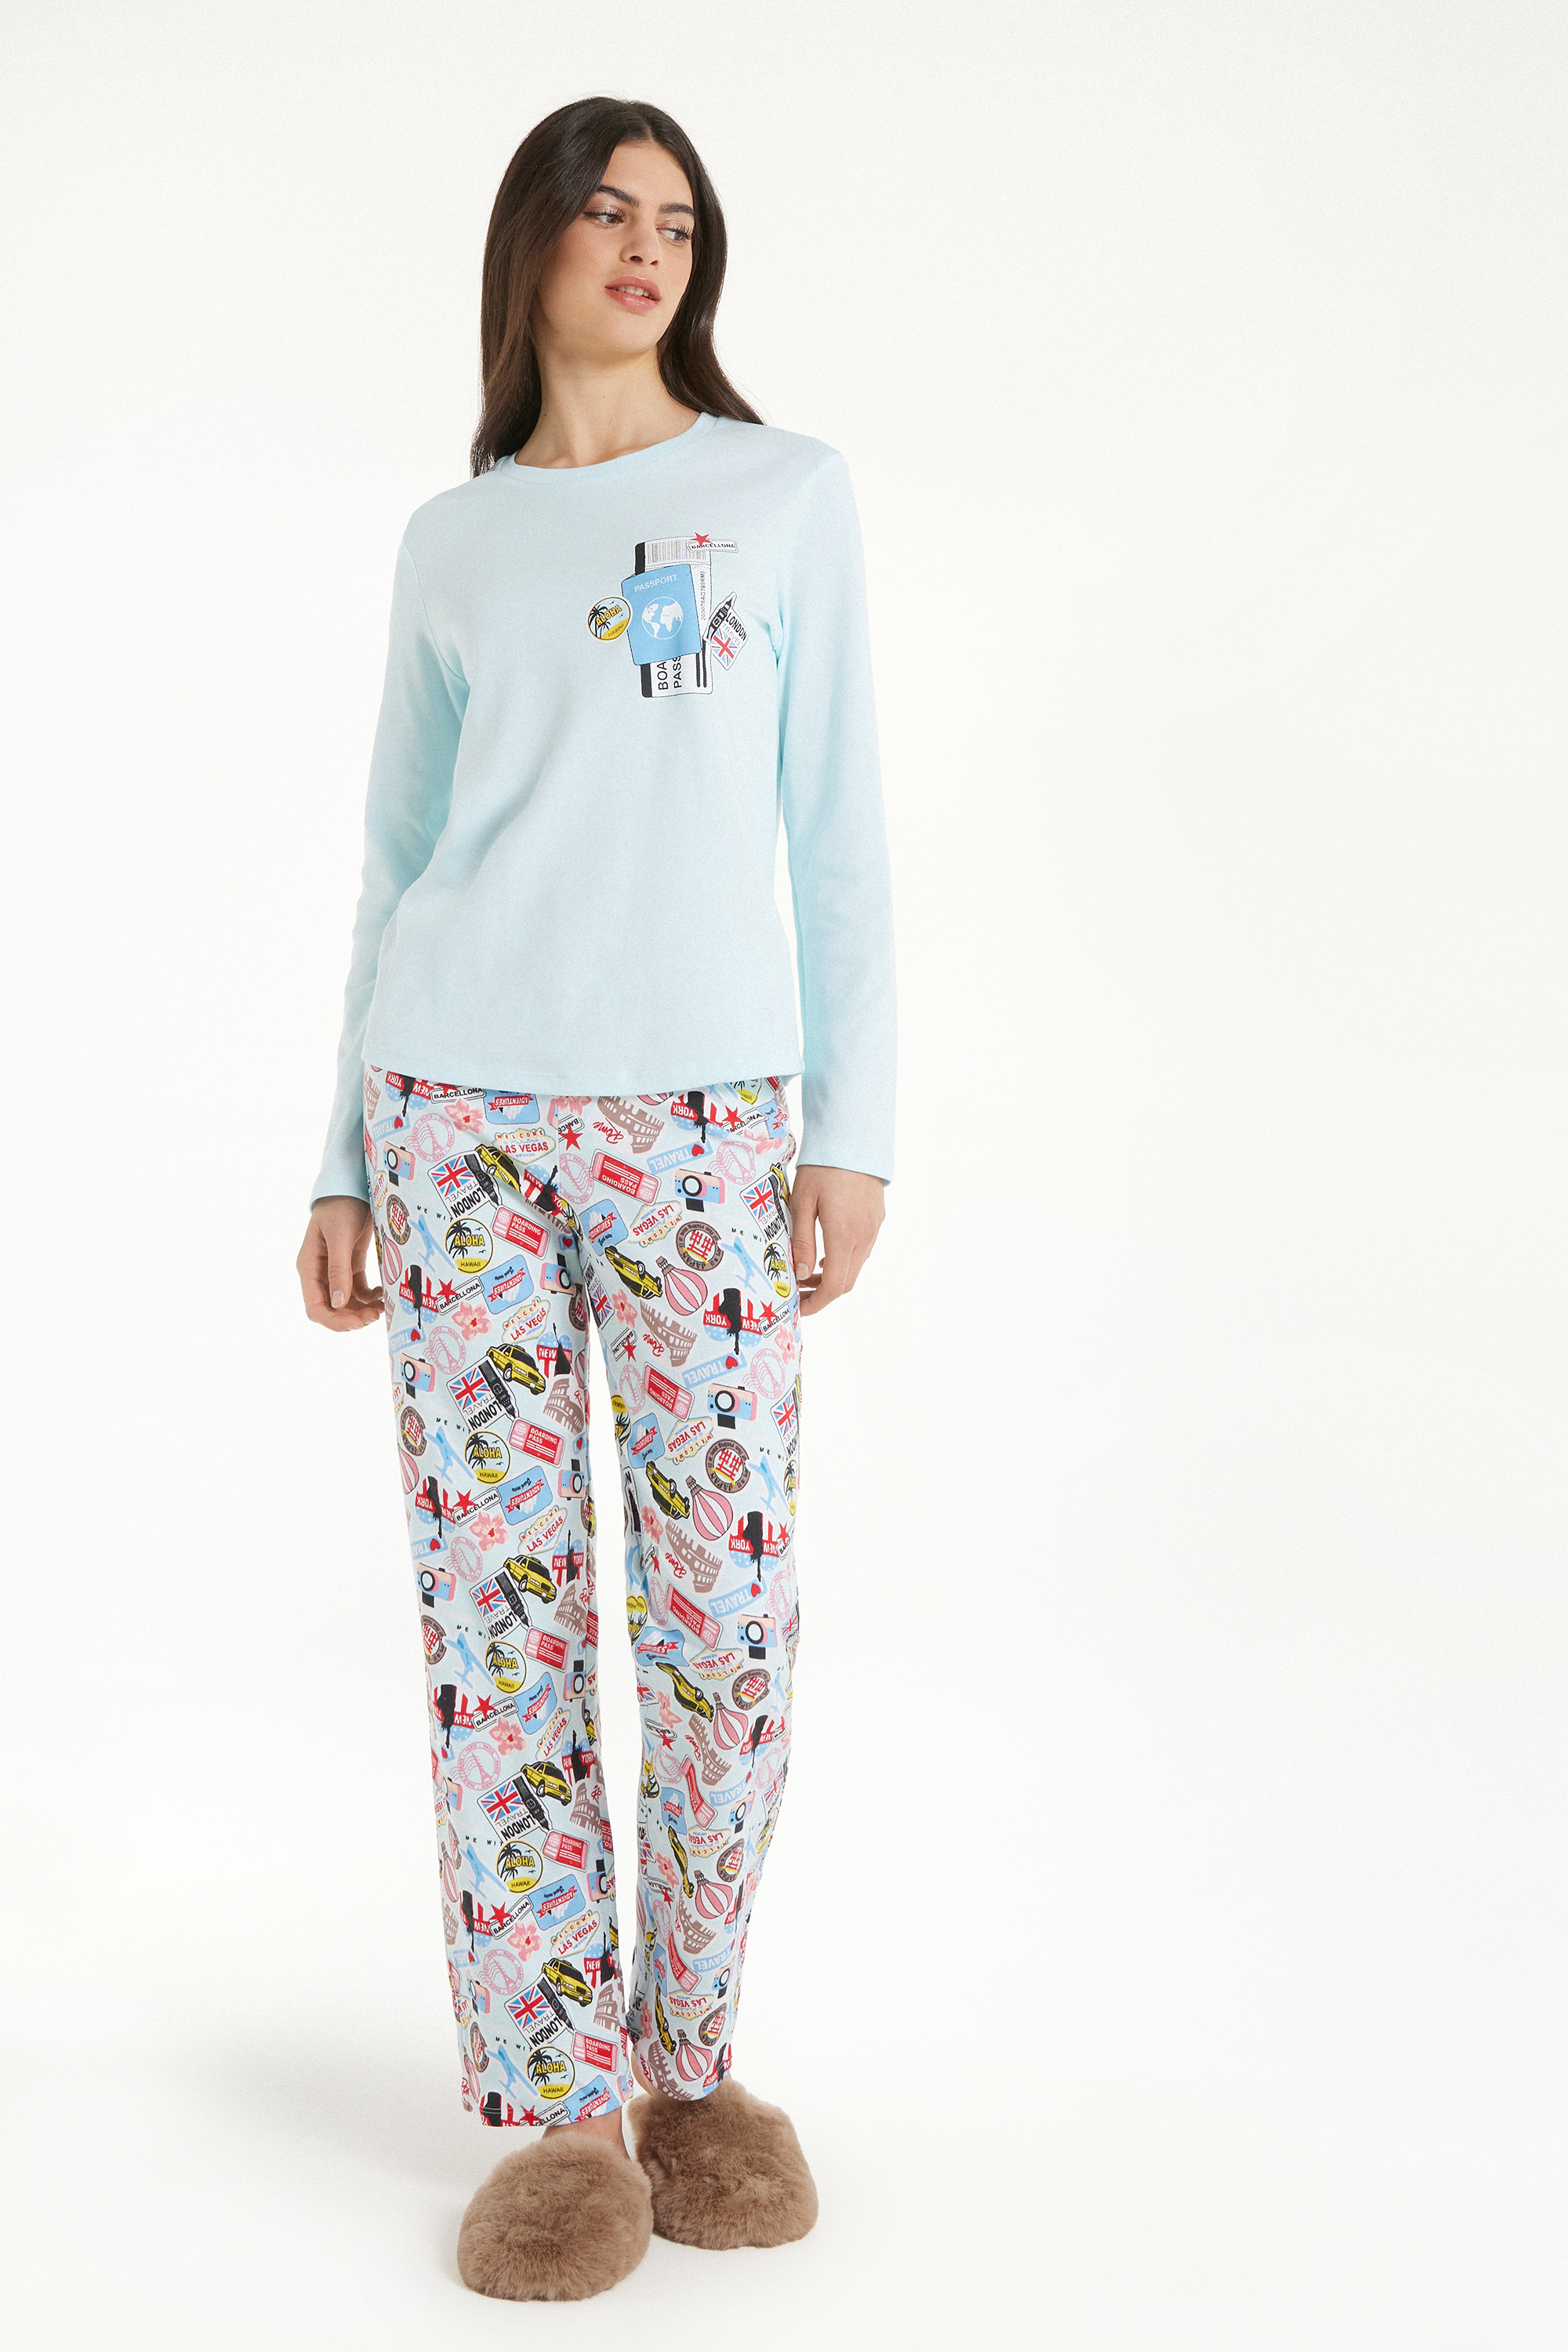 Langer Pyjama aus schwerer Baumwolle mit Reisepass-Print